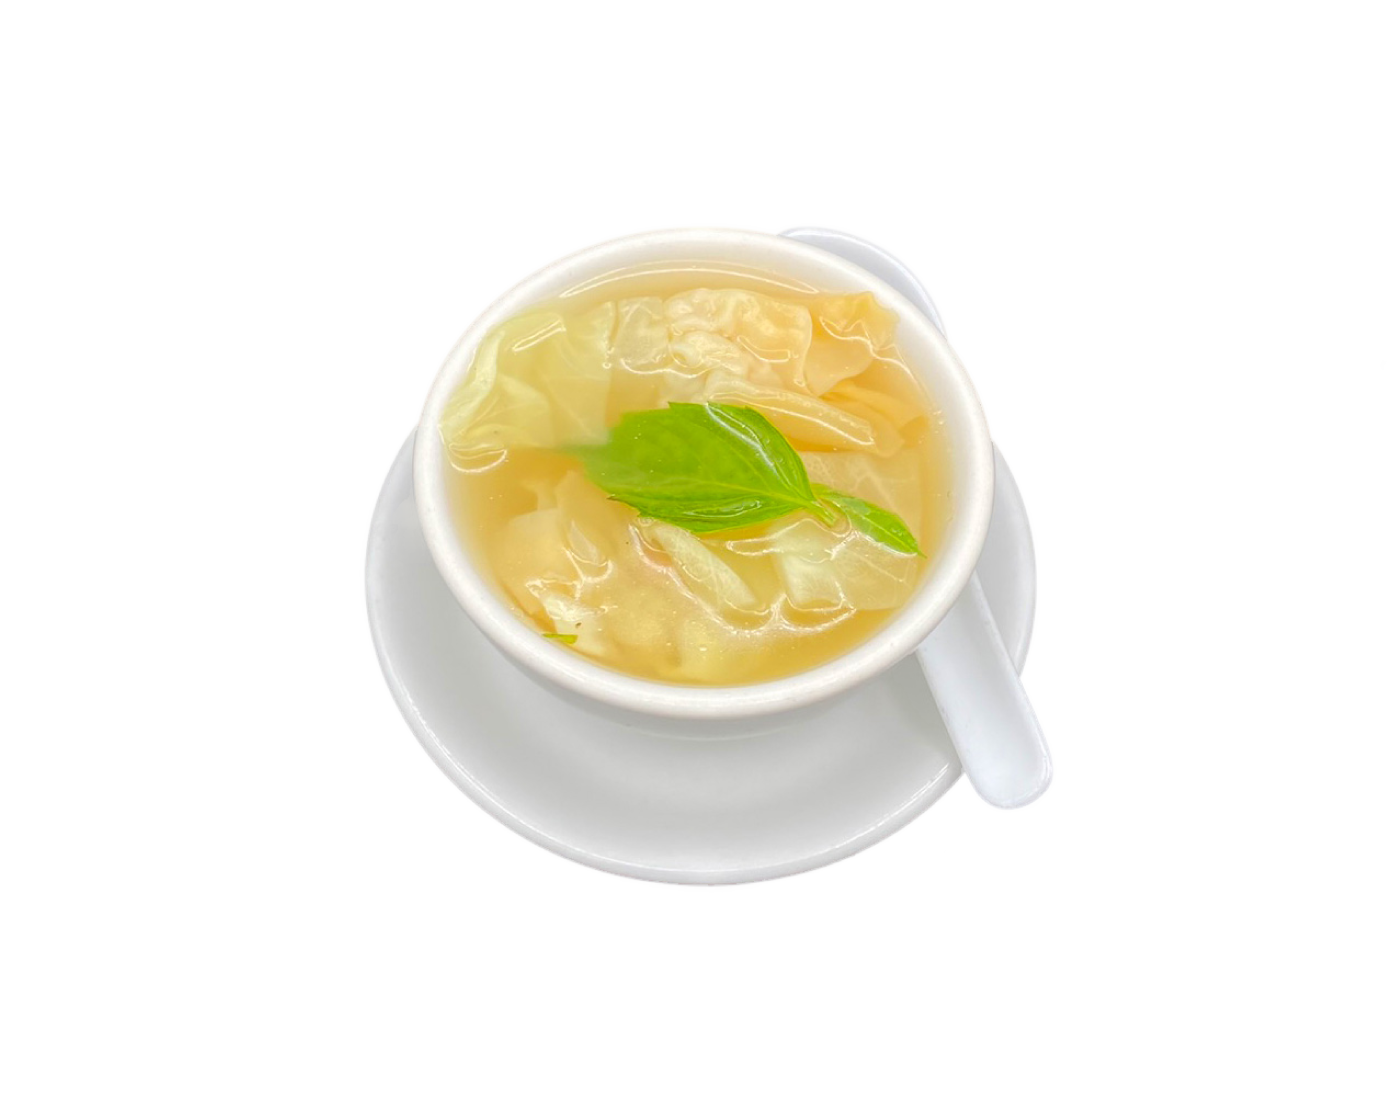 Wonton Soup in a bowl